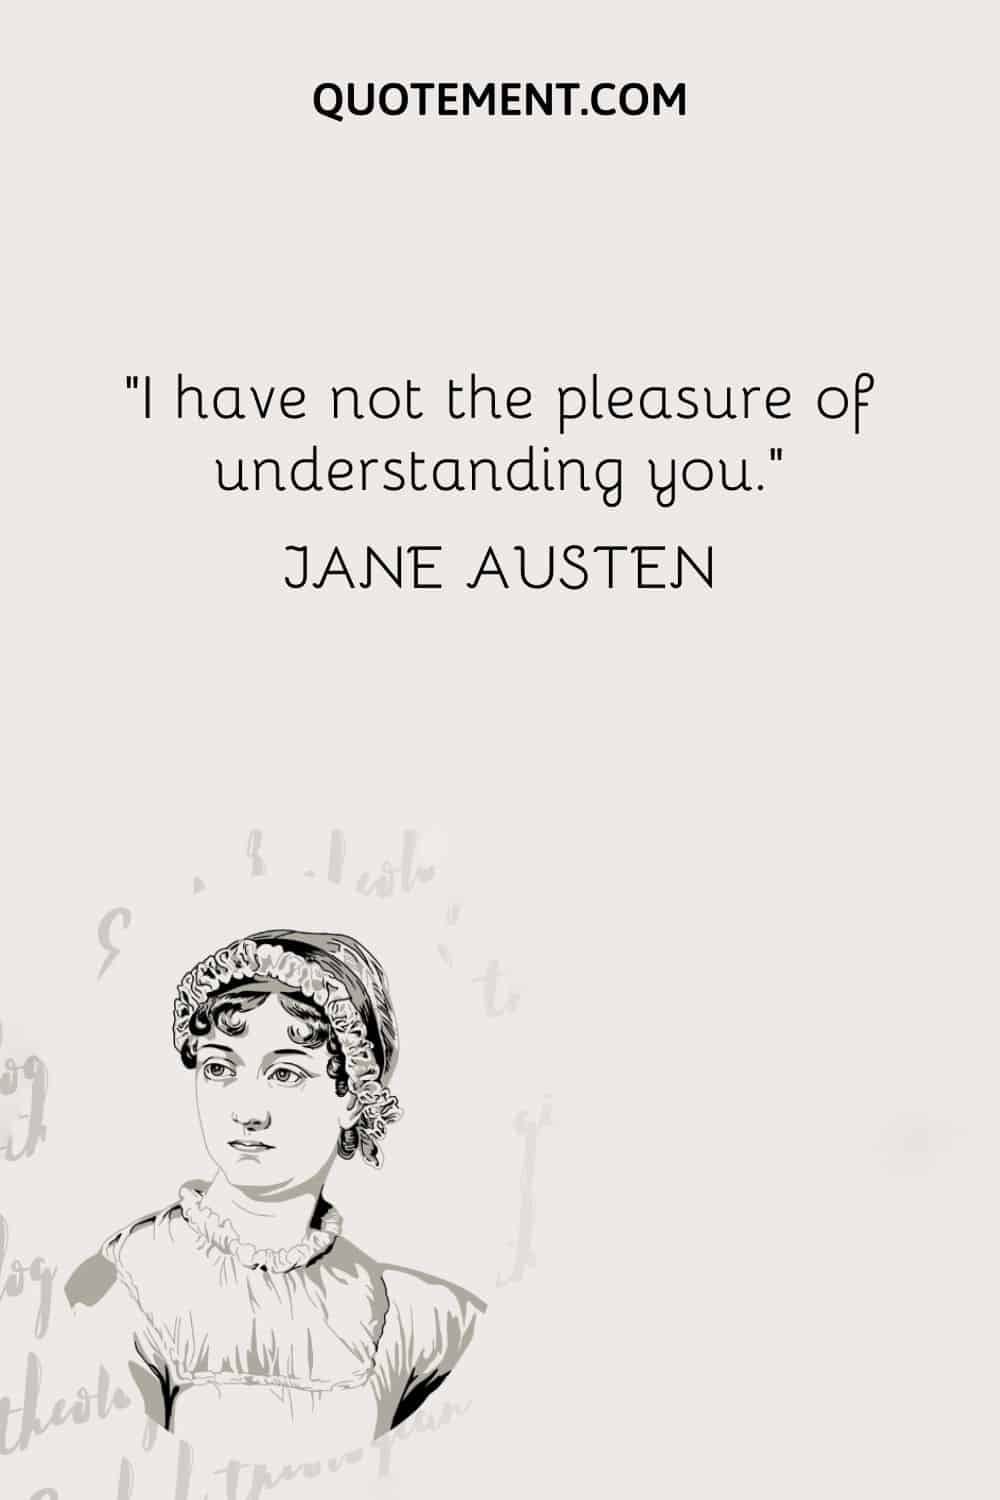 I have not the pleasure of understanding you. — Jane Austen